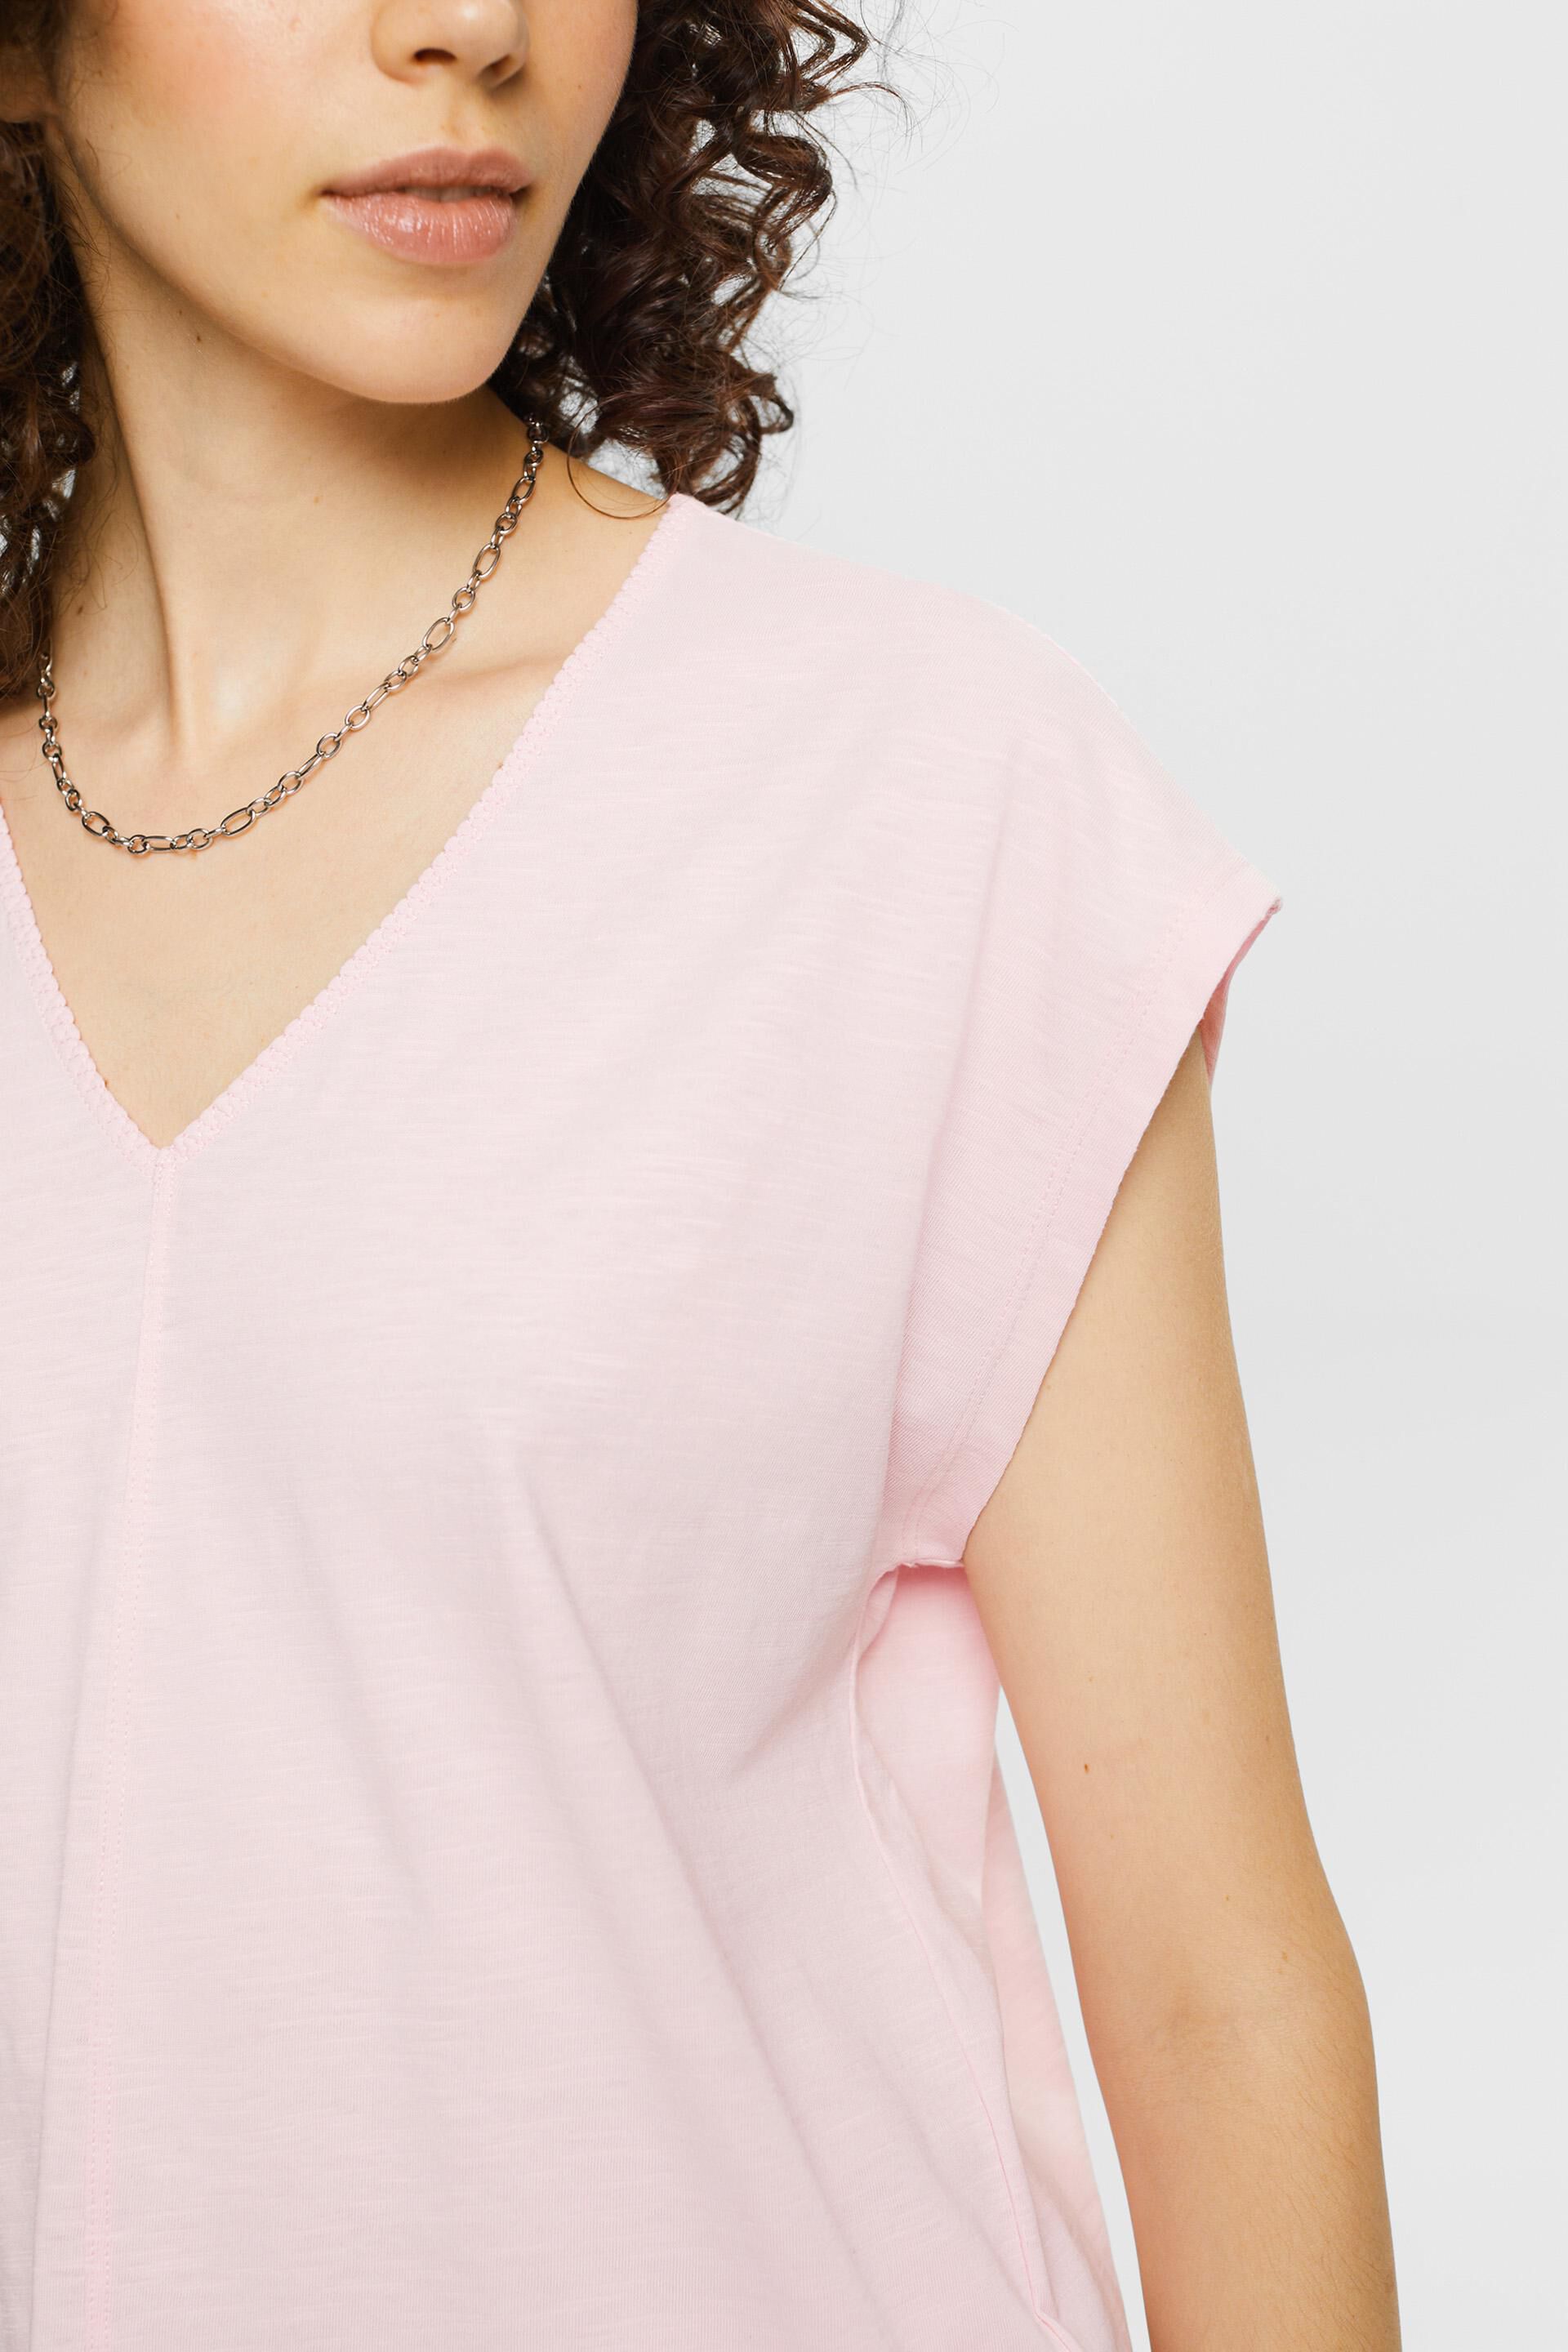 Esprit Damen T-Shirt mit V-Ausschnitt Ziernaht, Baumwolle und % 100